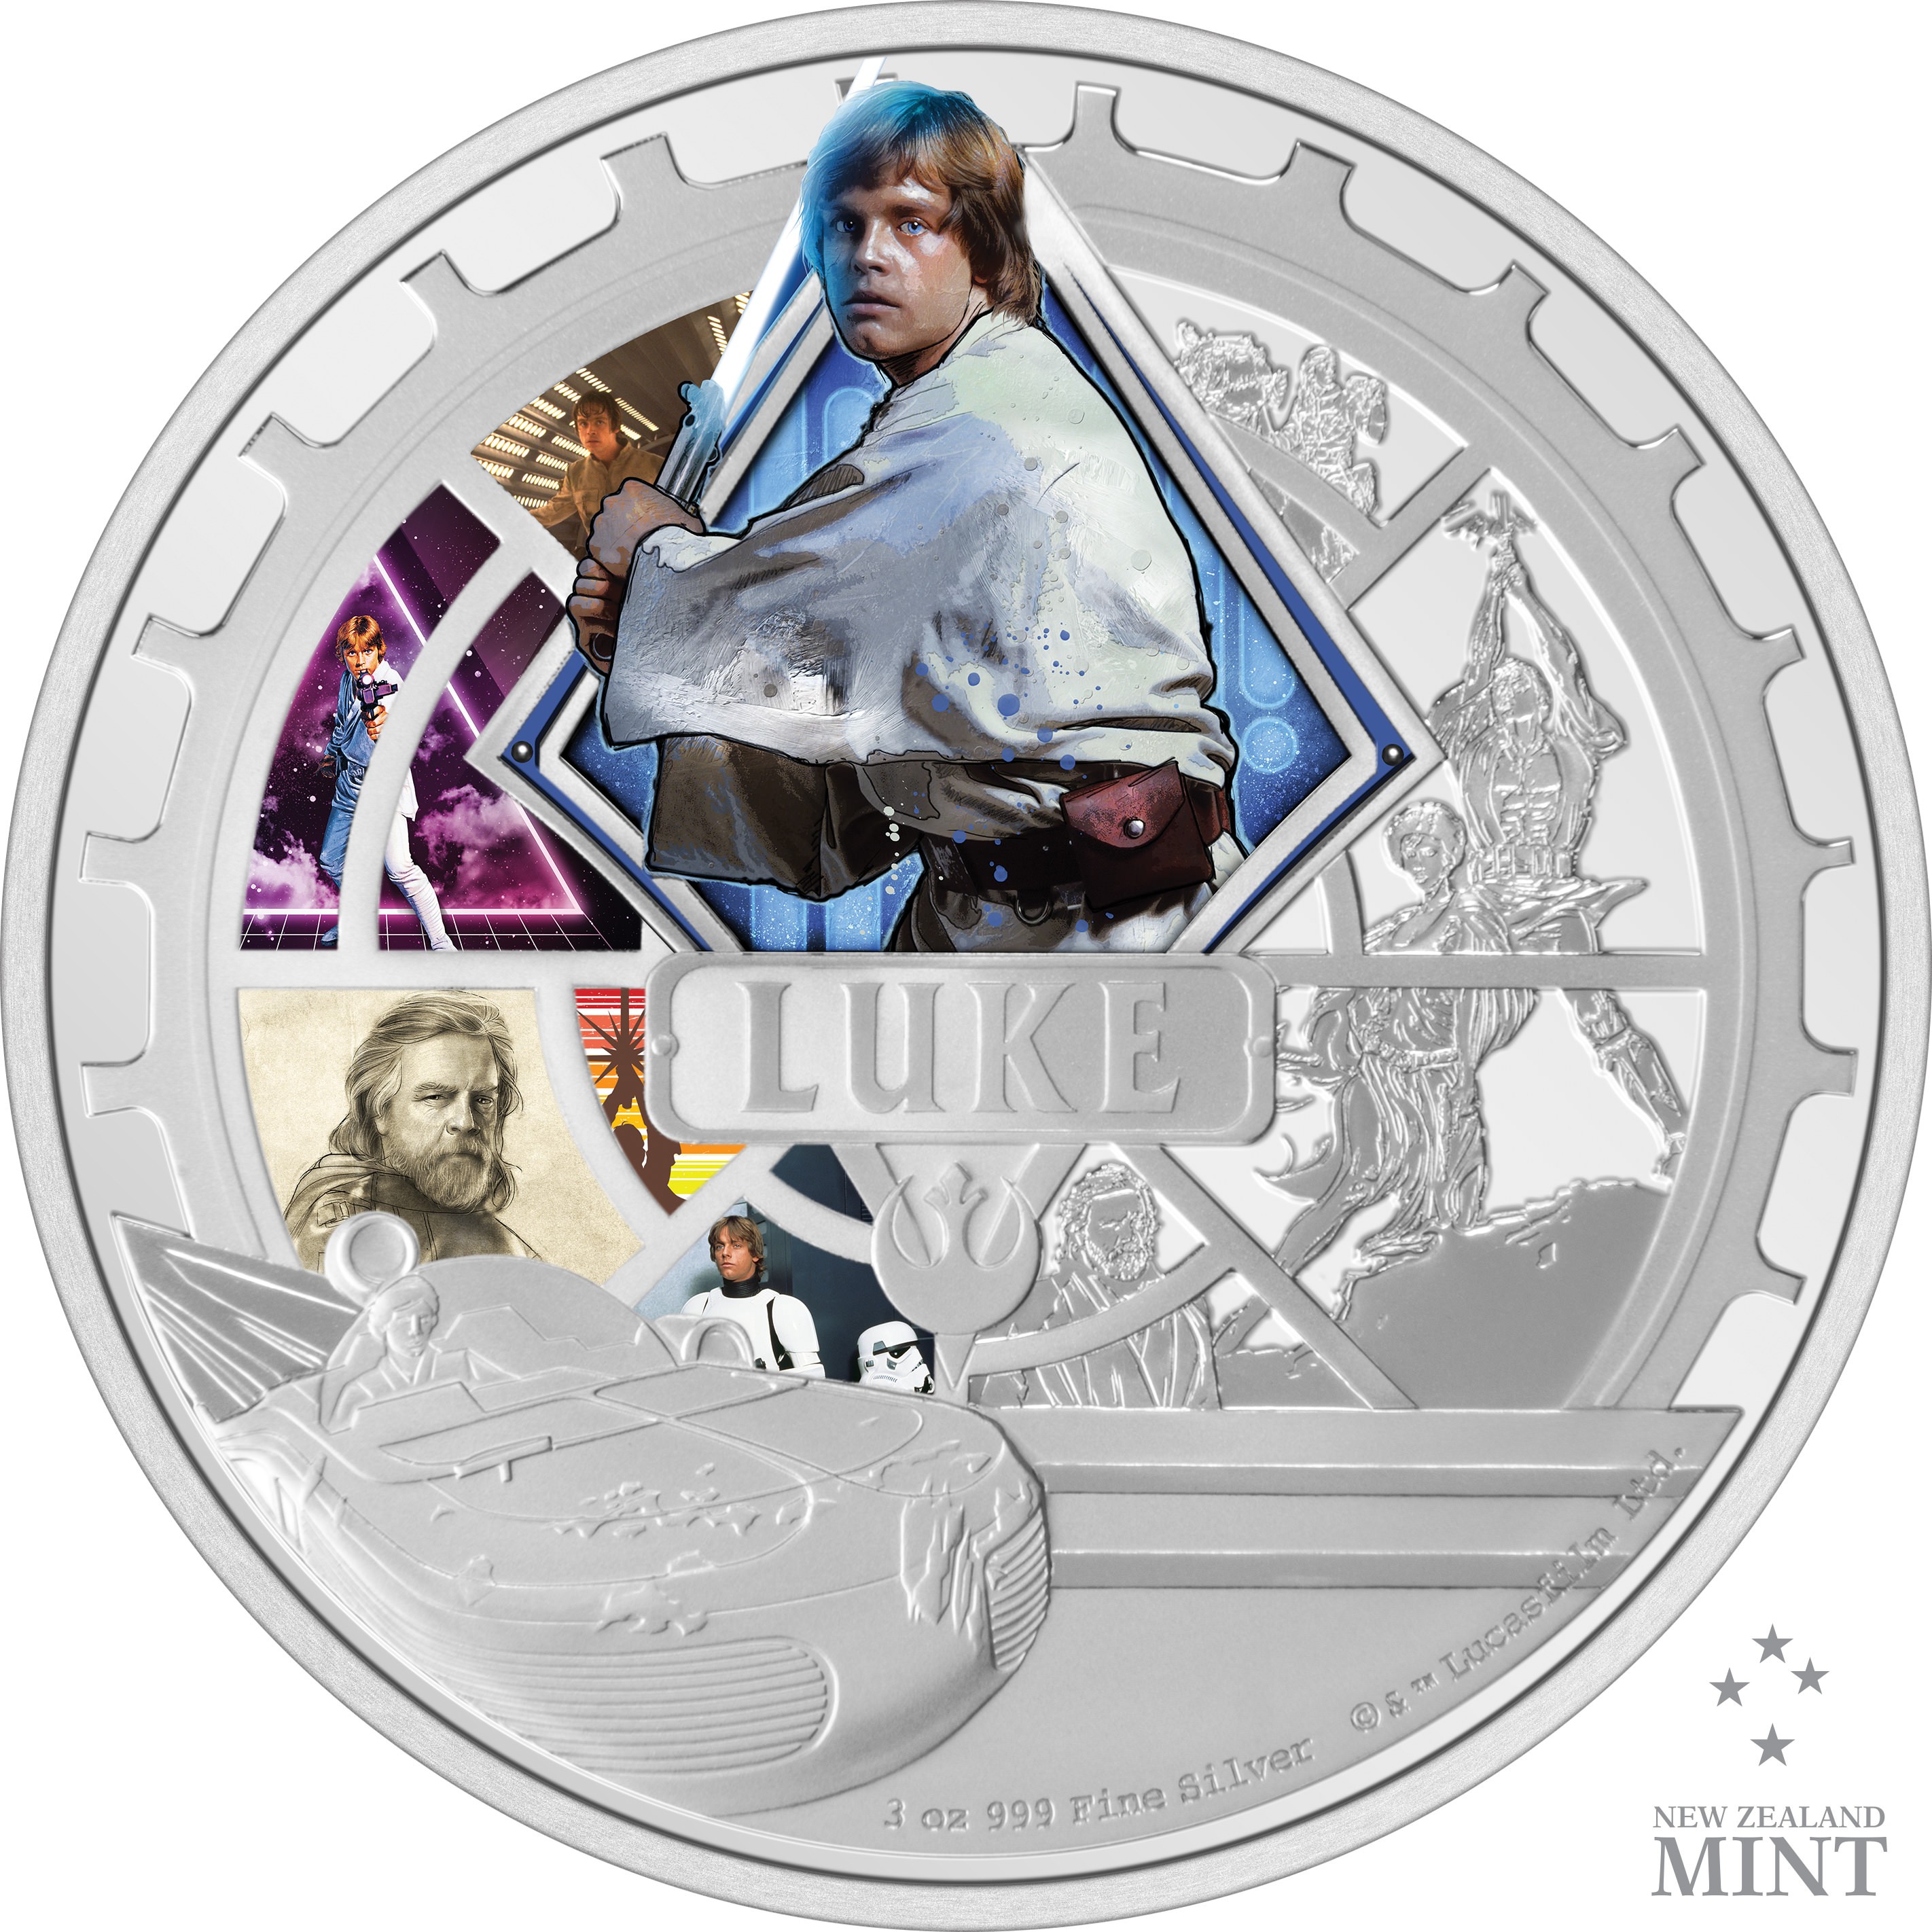 Luke Skywalker™ 3oz Silver Coin- Prototype Shown